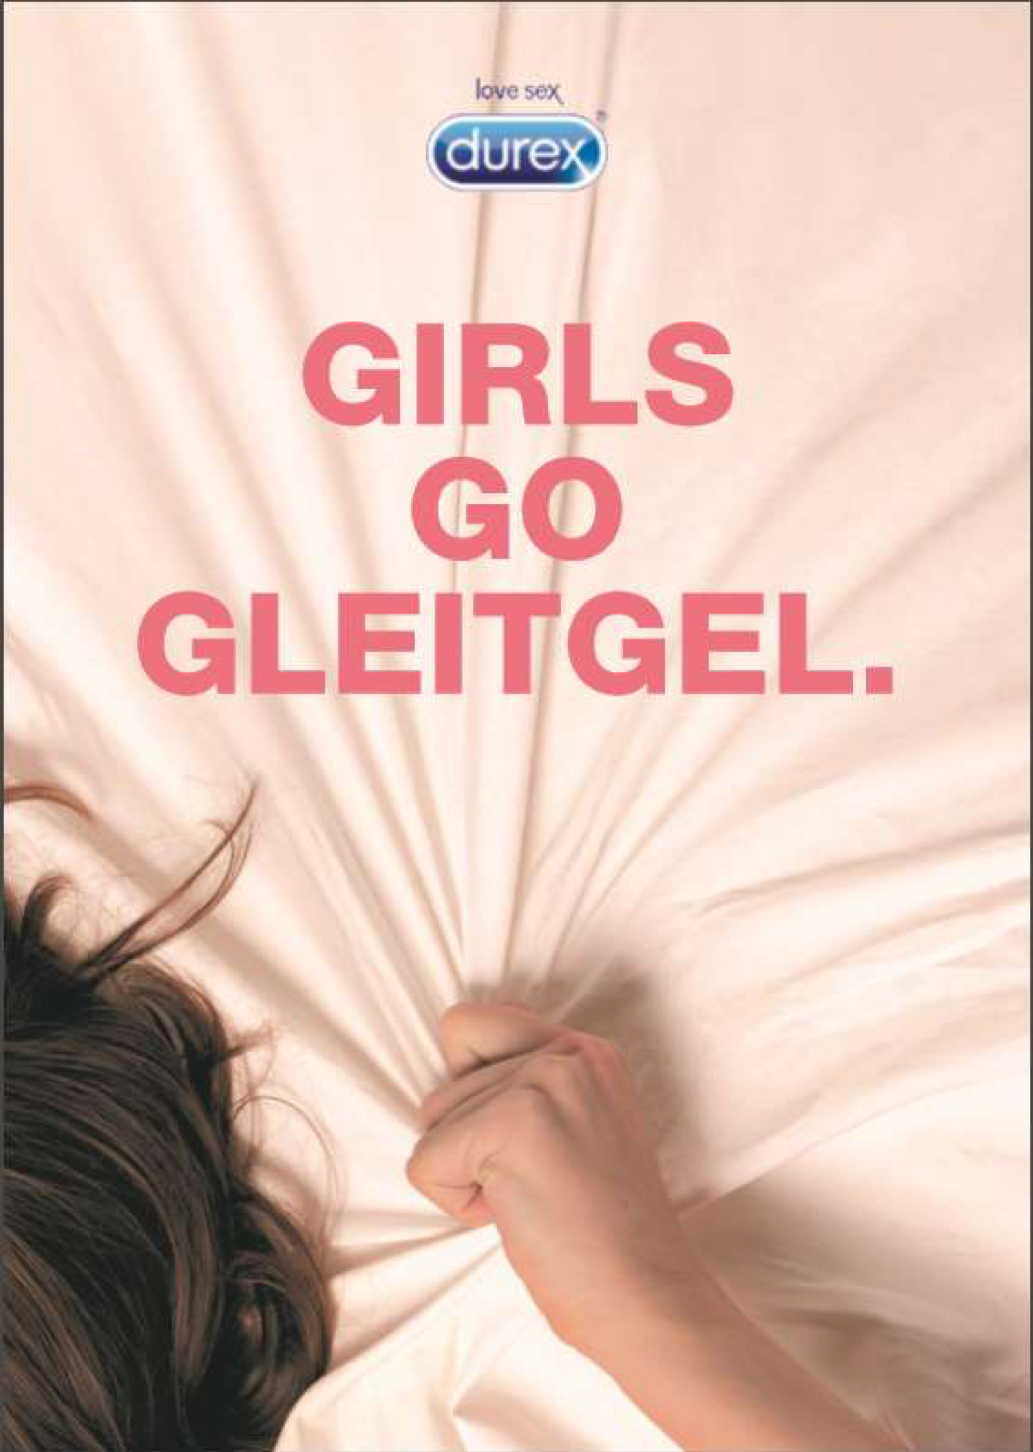 durex - Girls Go Gleitgel